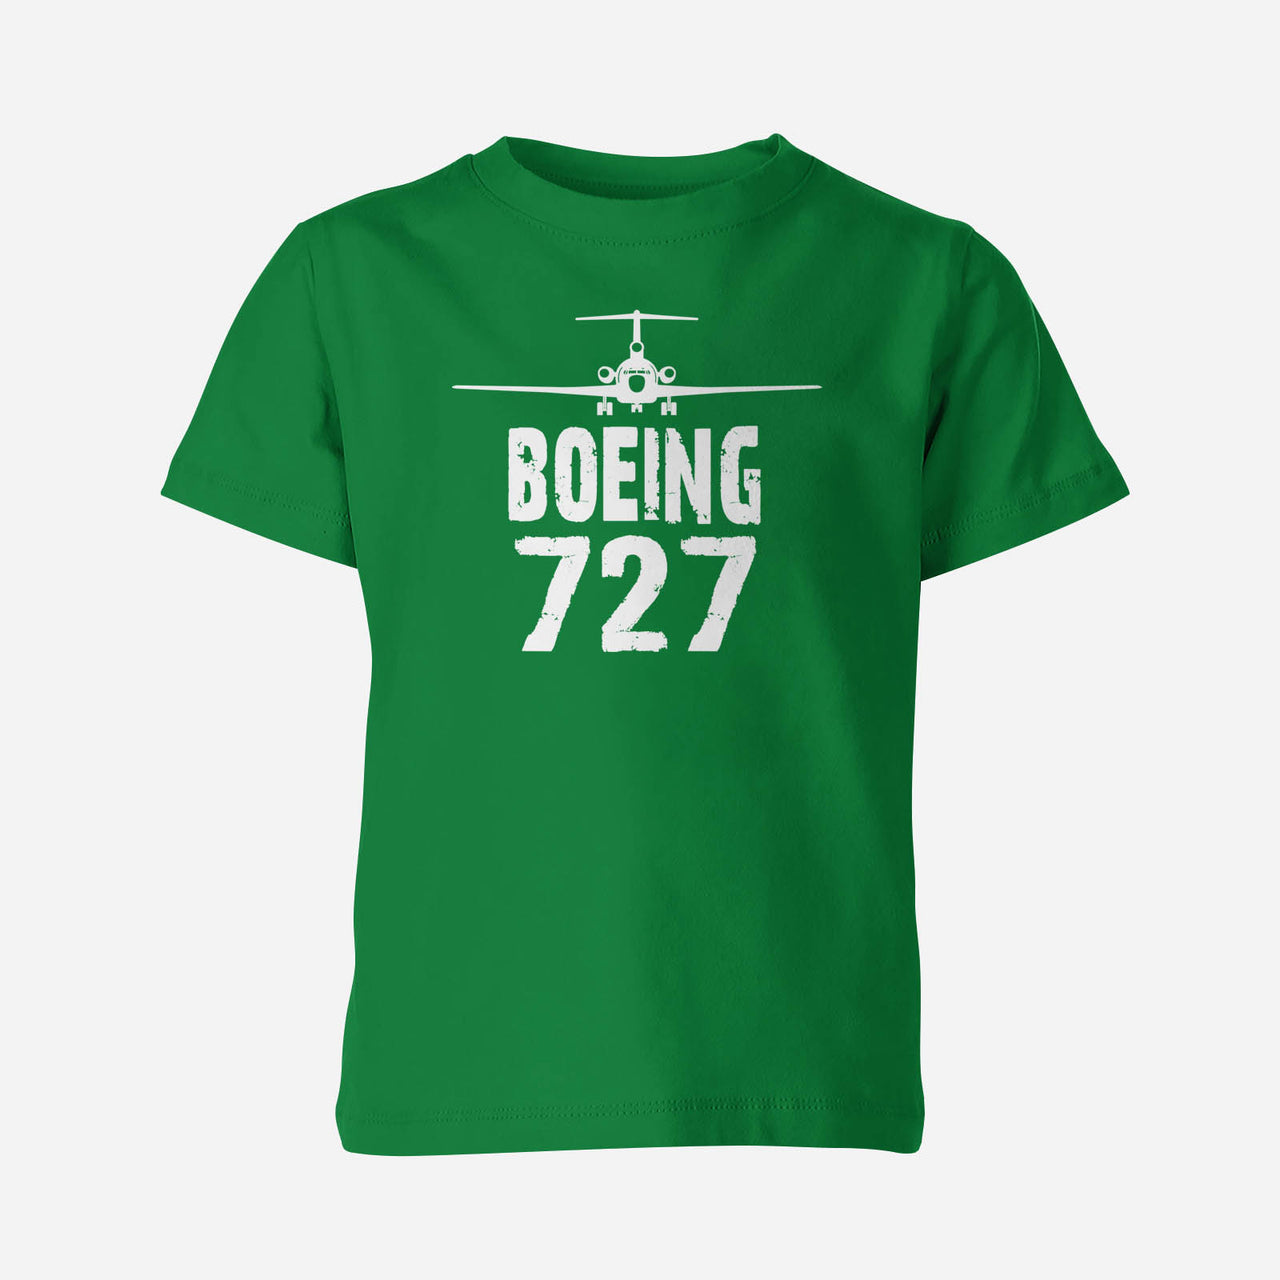 Boeing 727 & Plane Designed Children T-Shirts